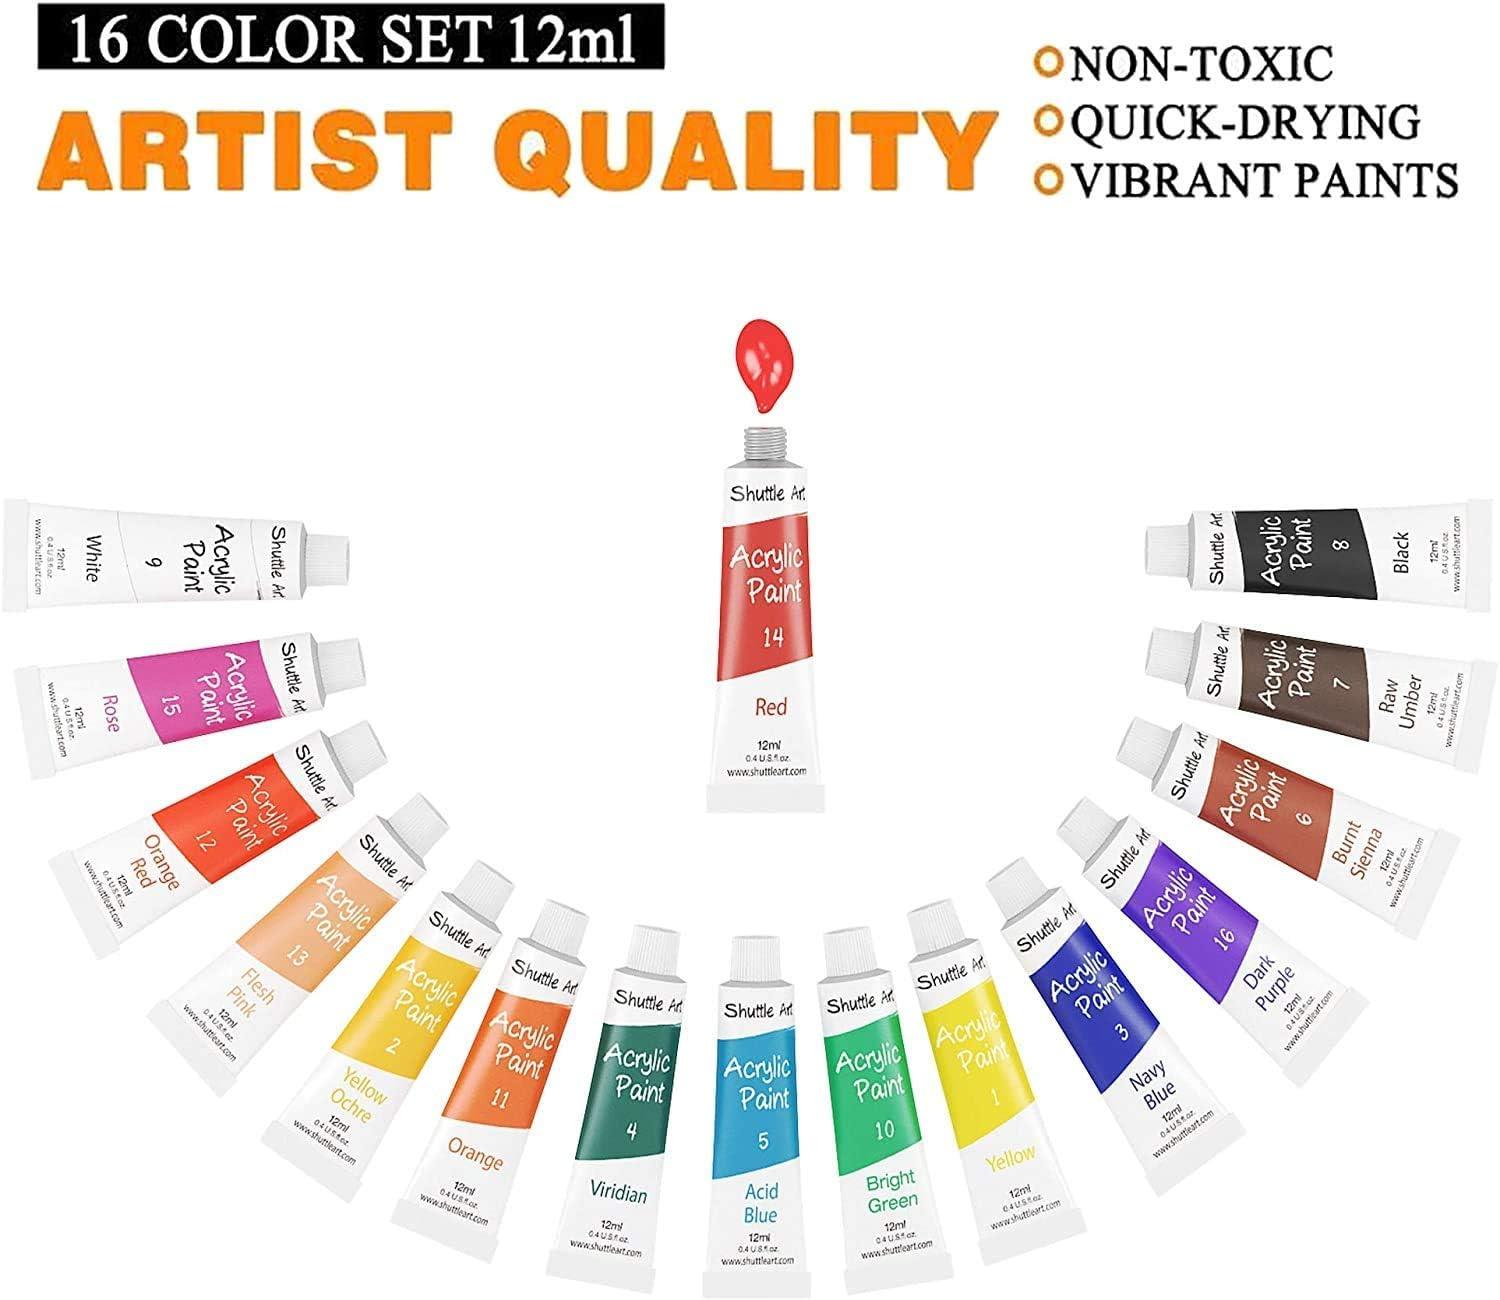 Rich Pigments 48 watercolors paint set 12ml non toxic